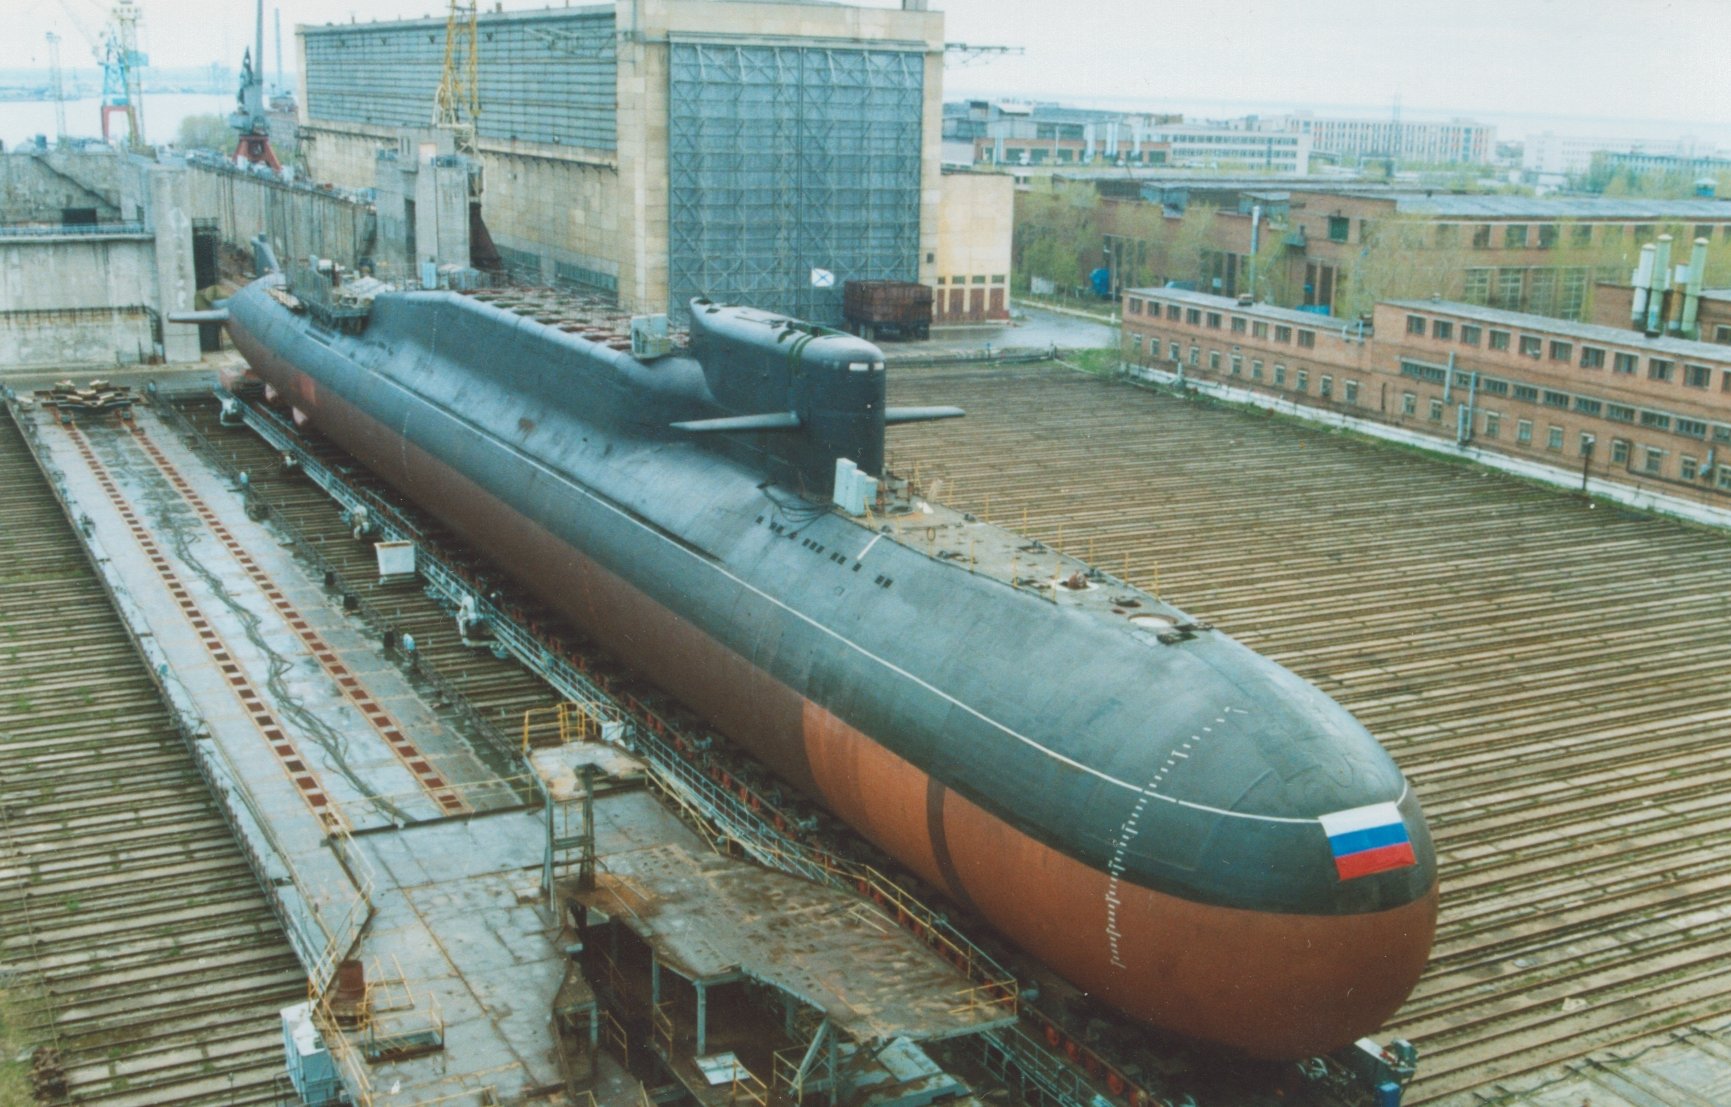 Пл ев. Подводная лодка 667бдрм "Дельфин". 667 БДРМ подводная лодка. Подводные лодки проекта 941 «акула». Подводная лодка 667 БДРМ Екатеринбург.